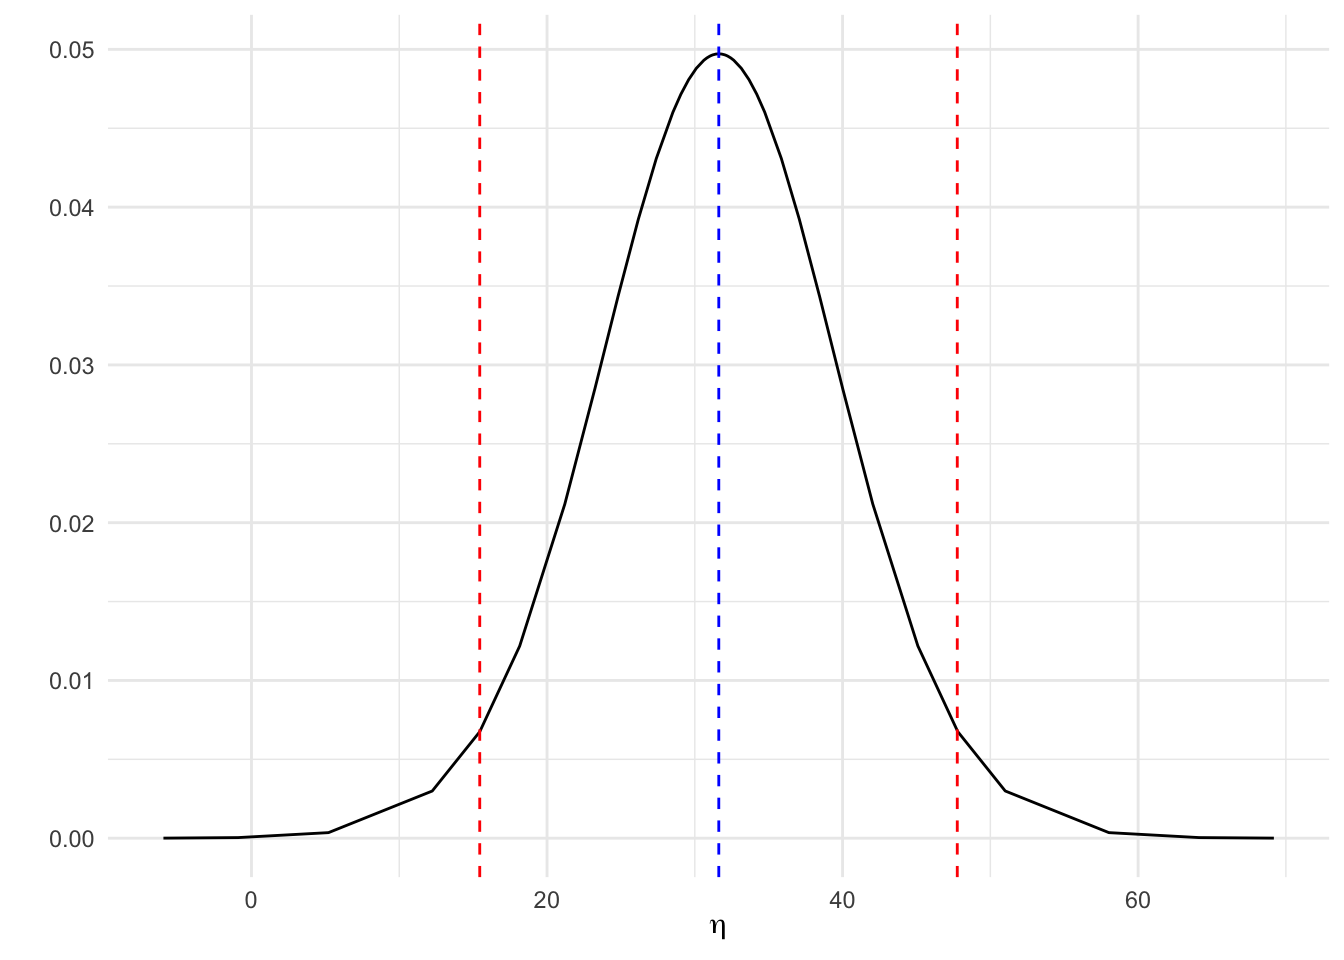 Distribución predictiva a posteriori de SO2 para una configuración dada de los predictores.